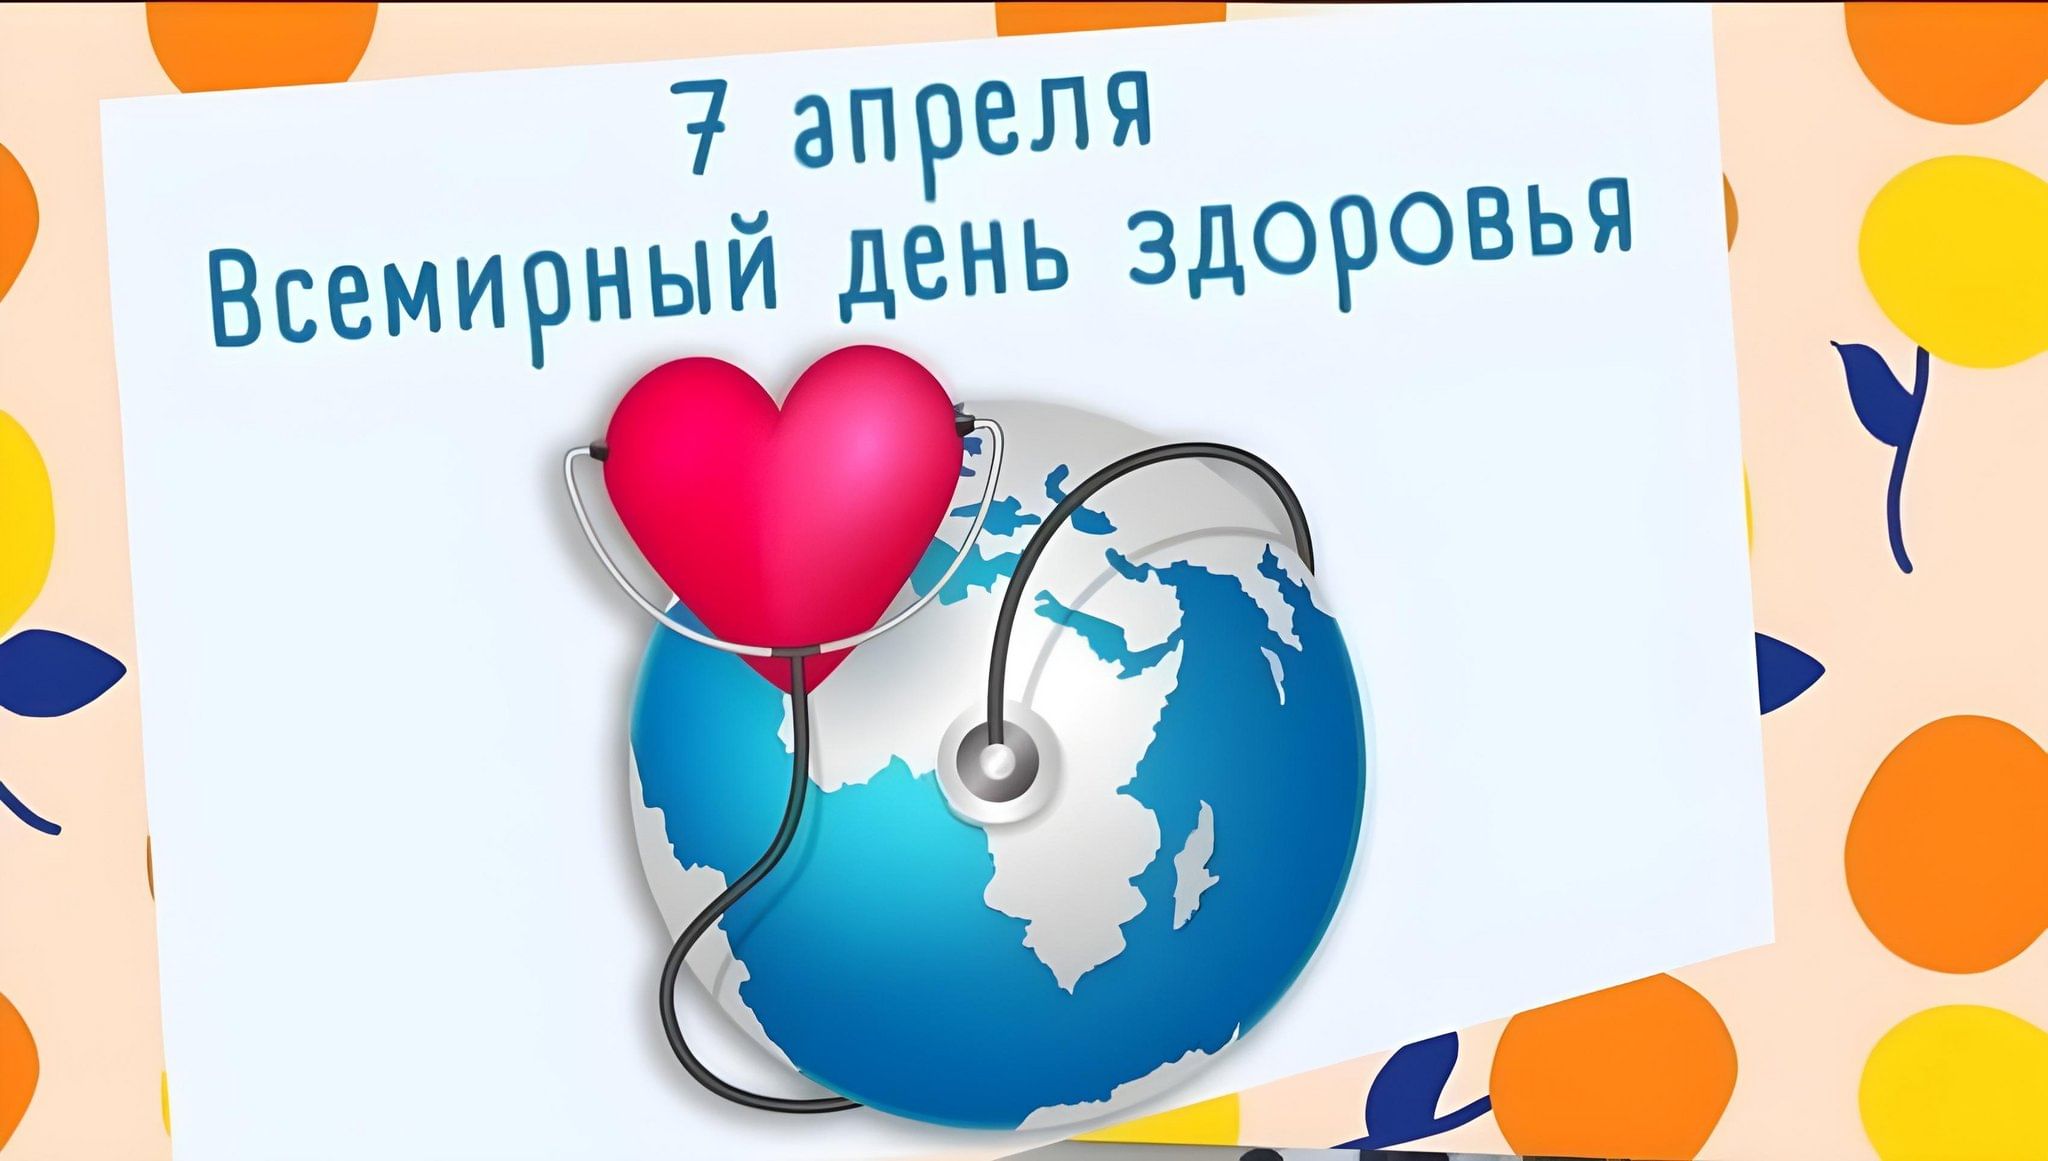 Всемирный день здоровья поздравления